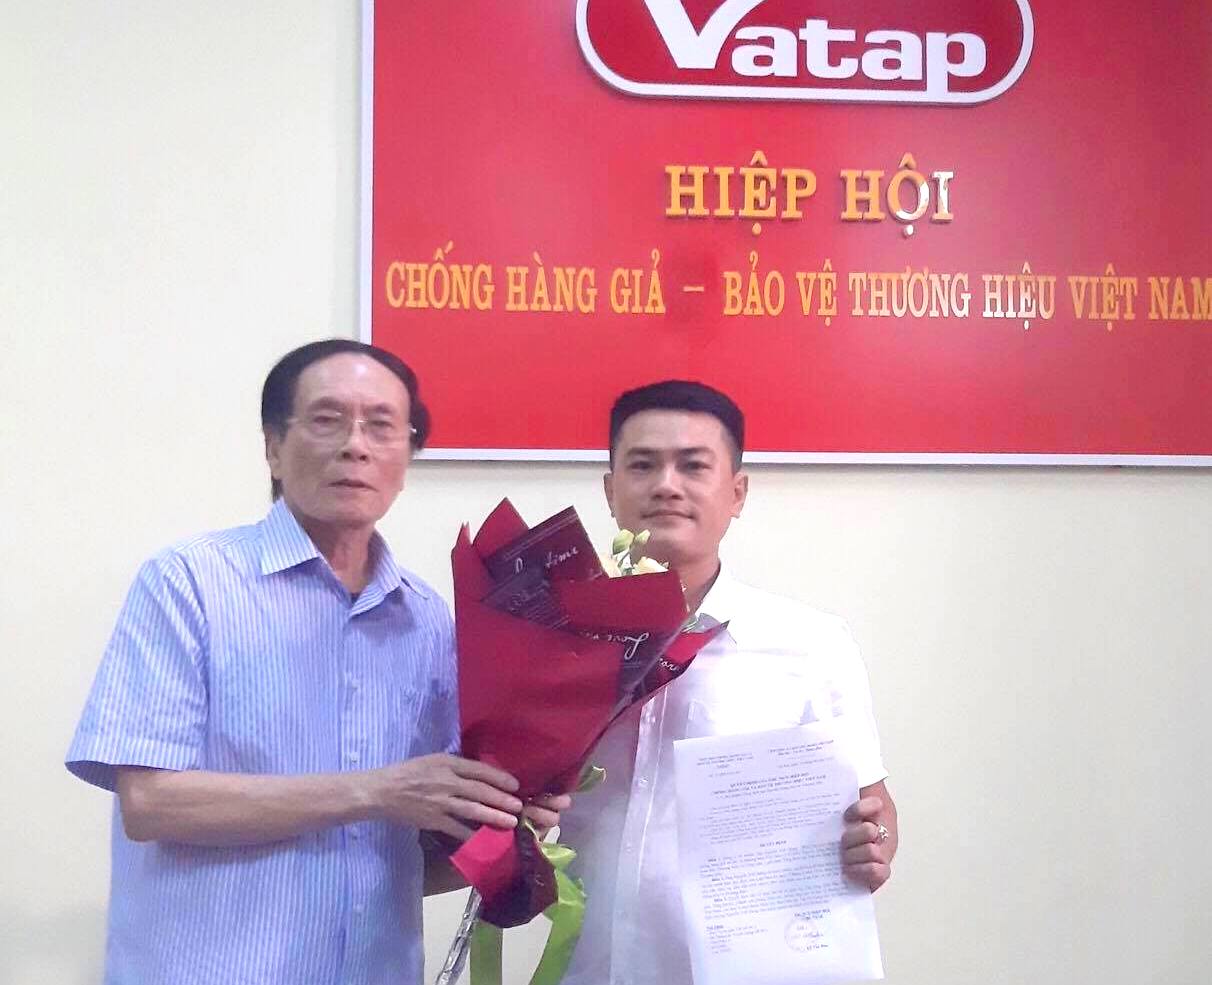 Ông Nguyễn Viết Hưng - Phó chủ tịch Hiệp hội VATAP được bổ nhiệm làm Tổng biên tập Tạp chí Hàng hóa và Thương hiệu.